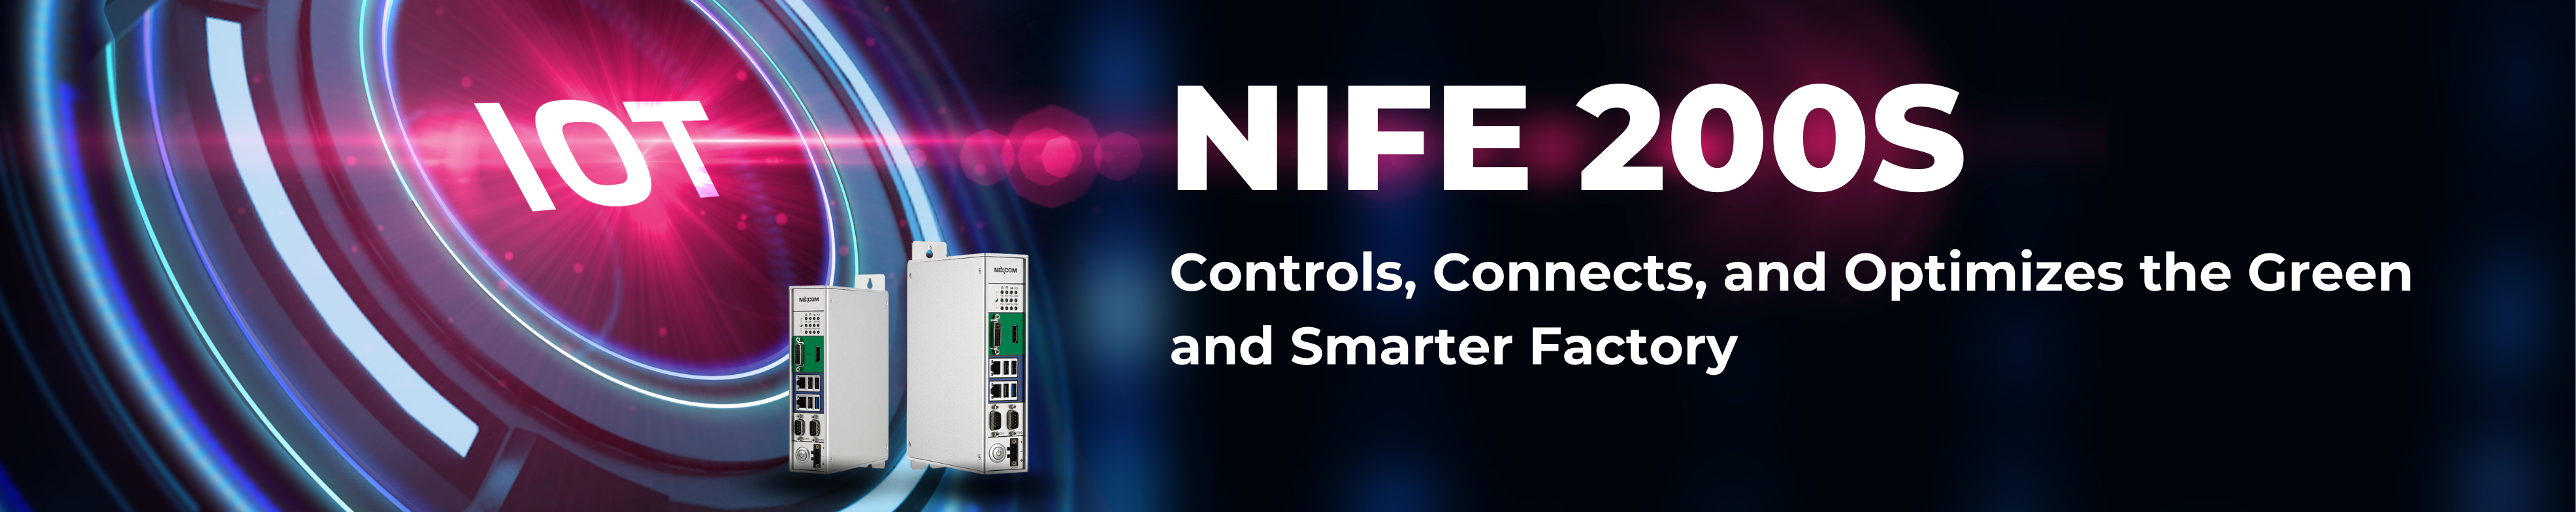 NIFE 200S điều khiển, kết nối và tối ưu hóa nhà máy thông minh hơn